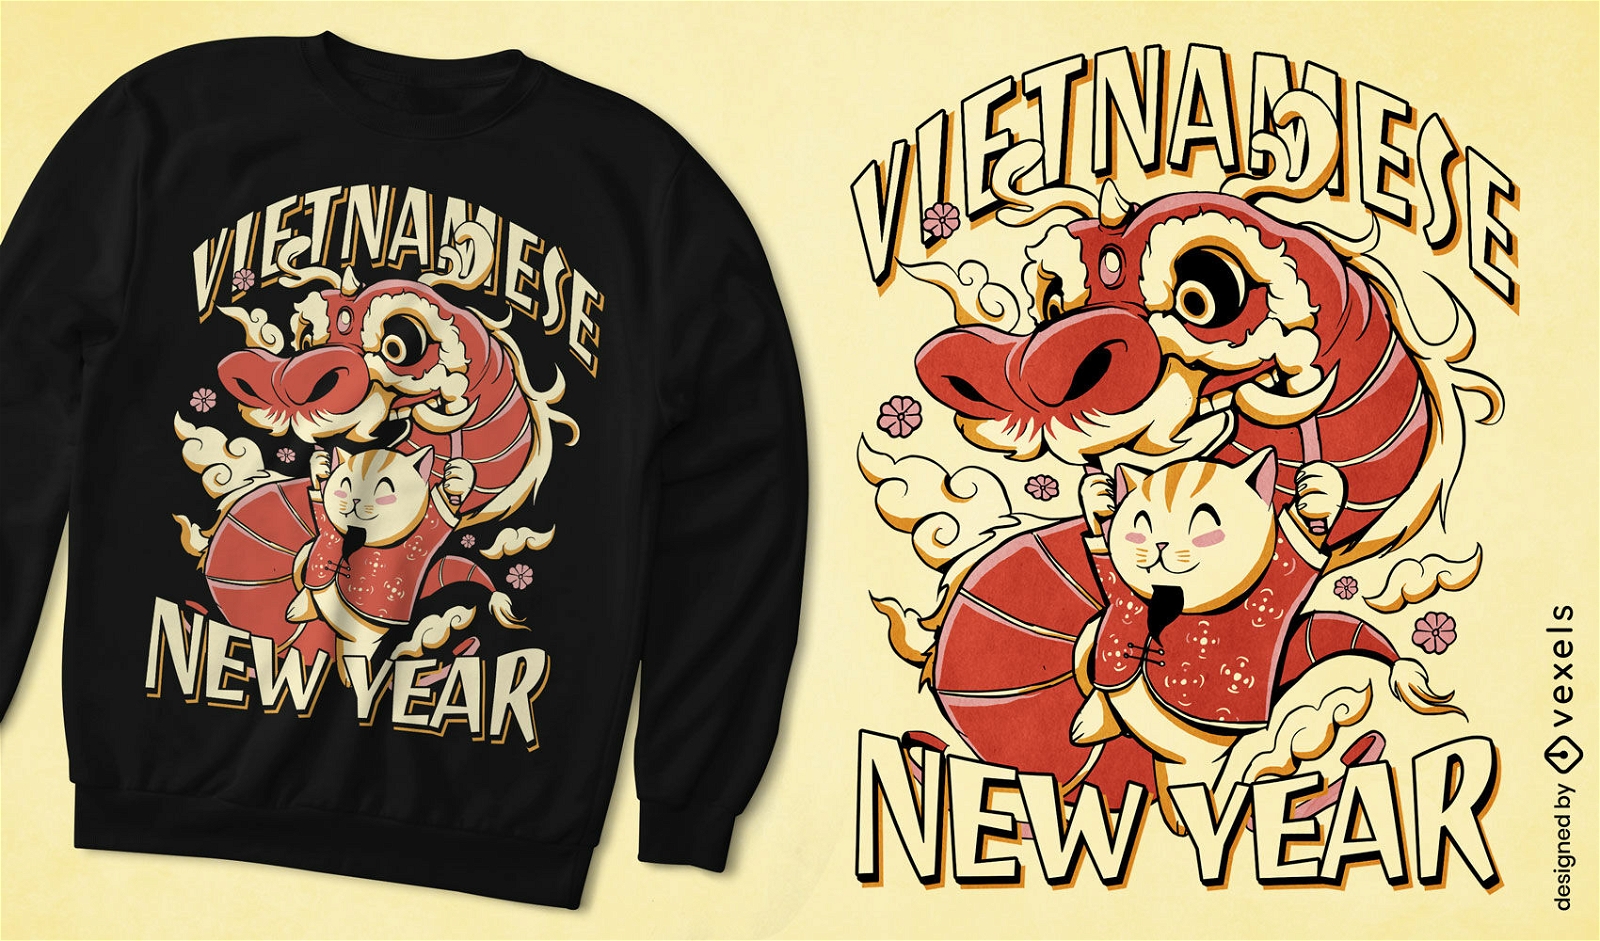 Vietnamesischer Drache-T-Shirt Entwurf des neuen Jahres